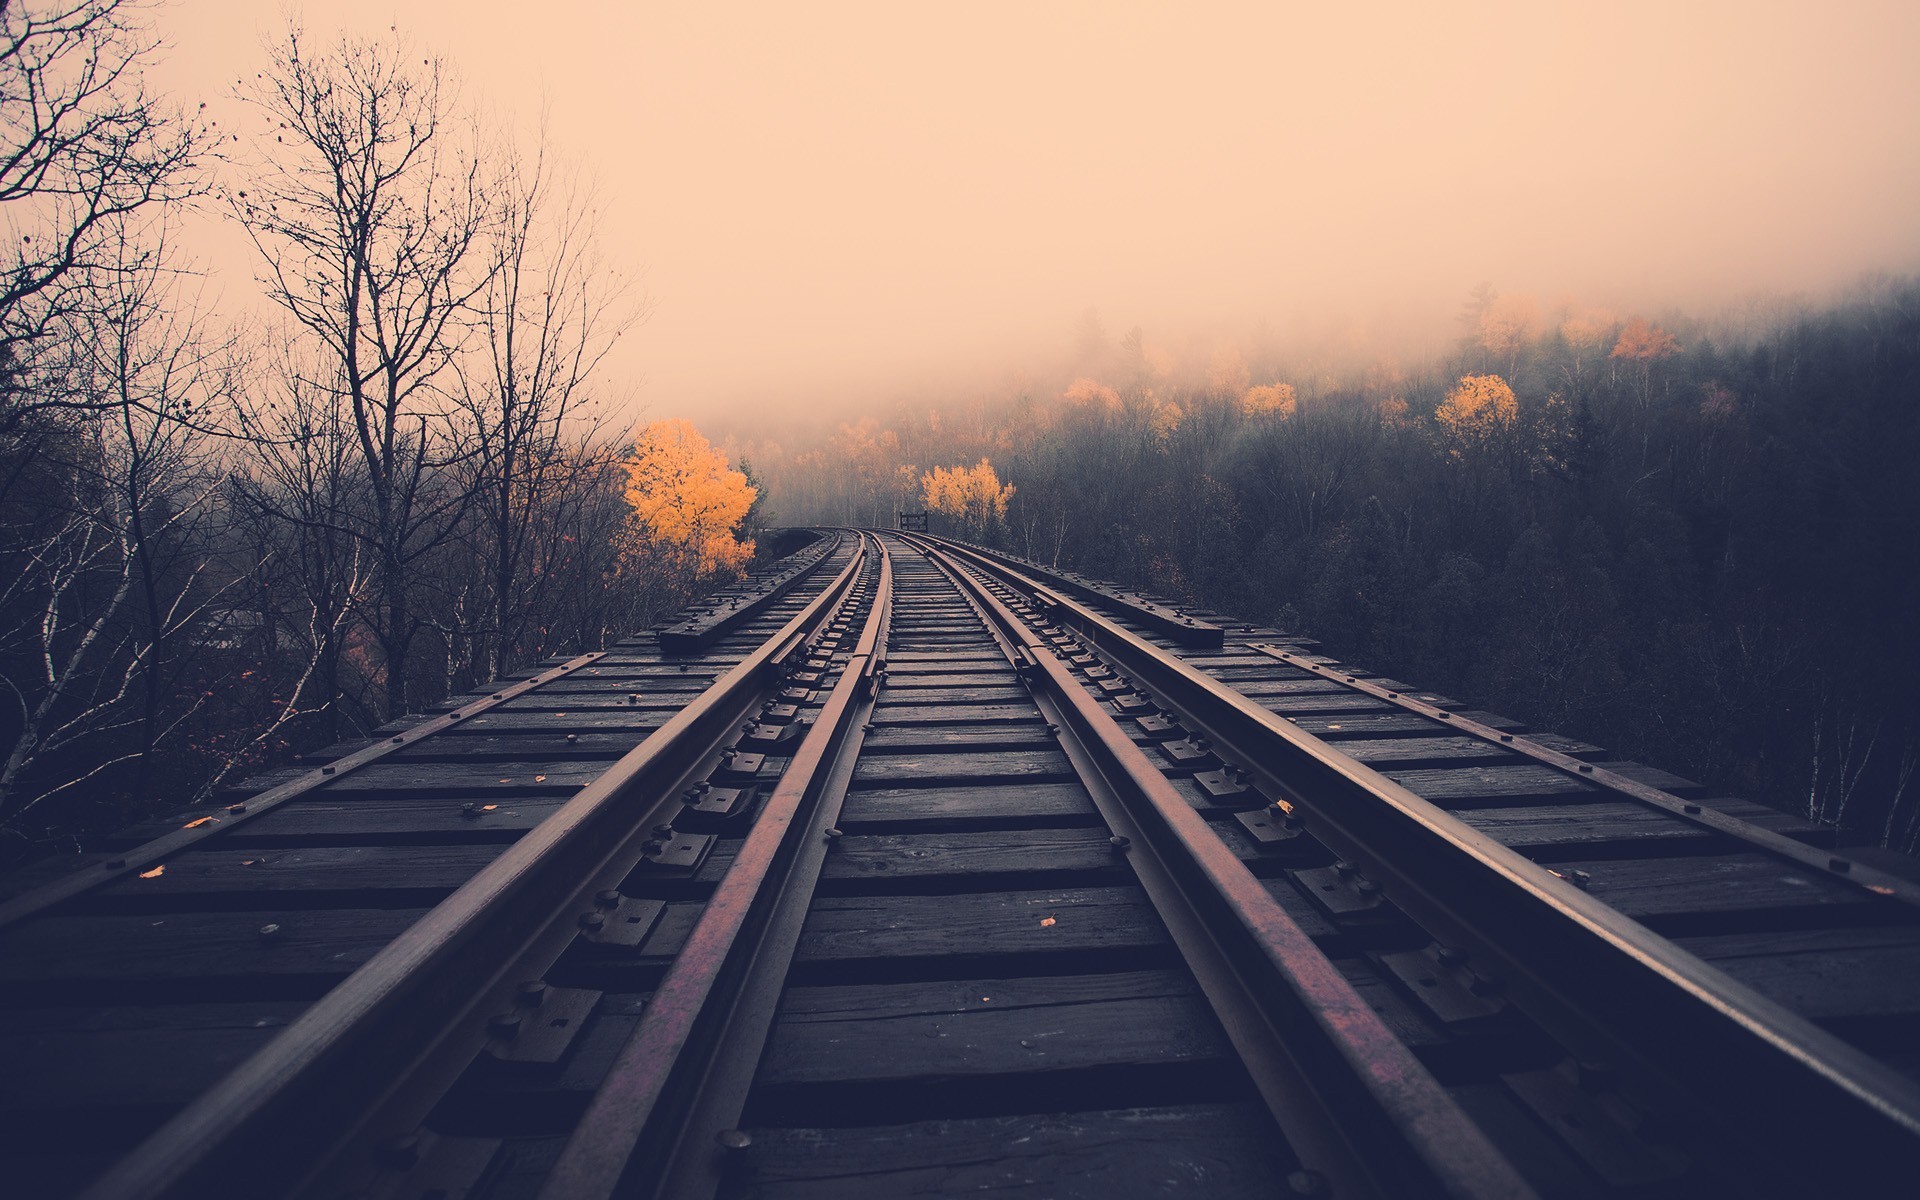 train, Tracks, Railroad, Stell, Metal, Trees, Landscapes, Autumn, Fall, Haze, Fog, Mist Wallpaper